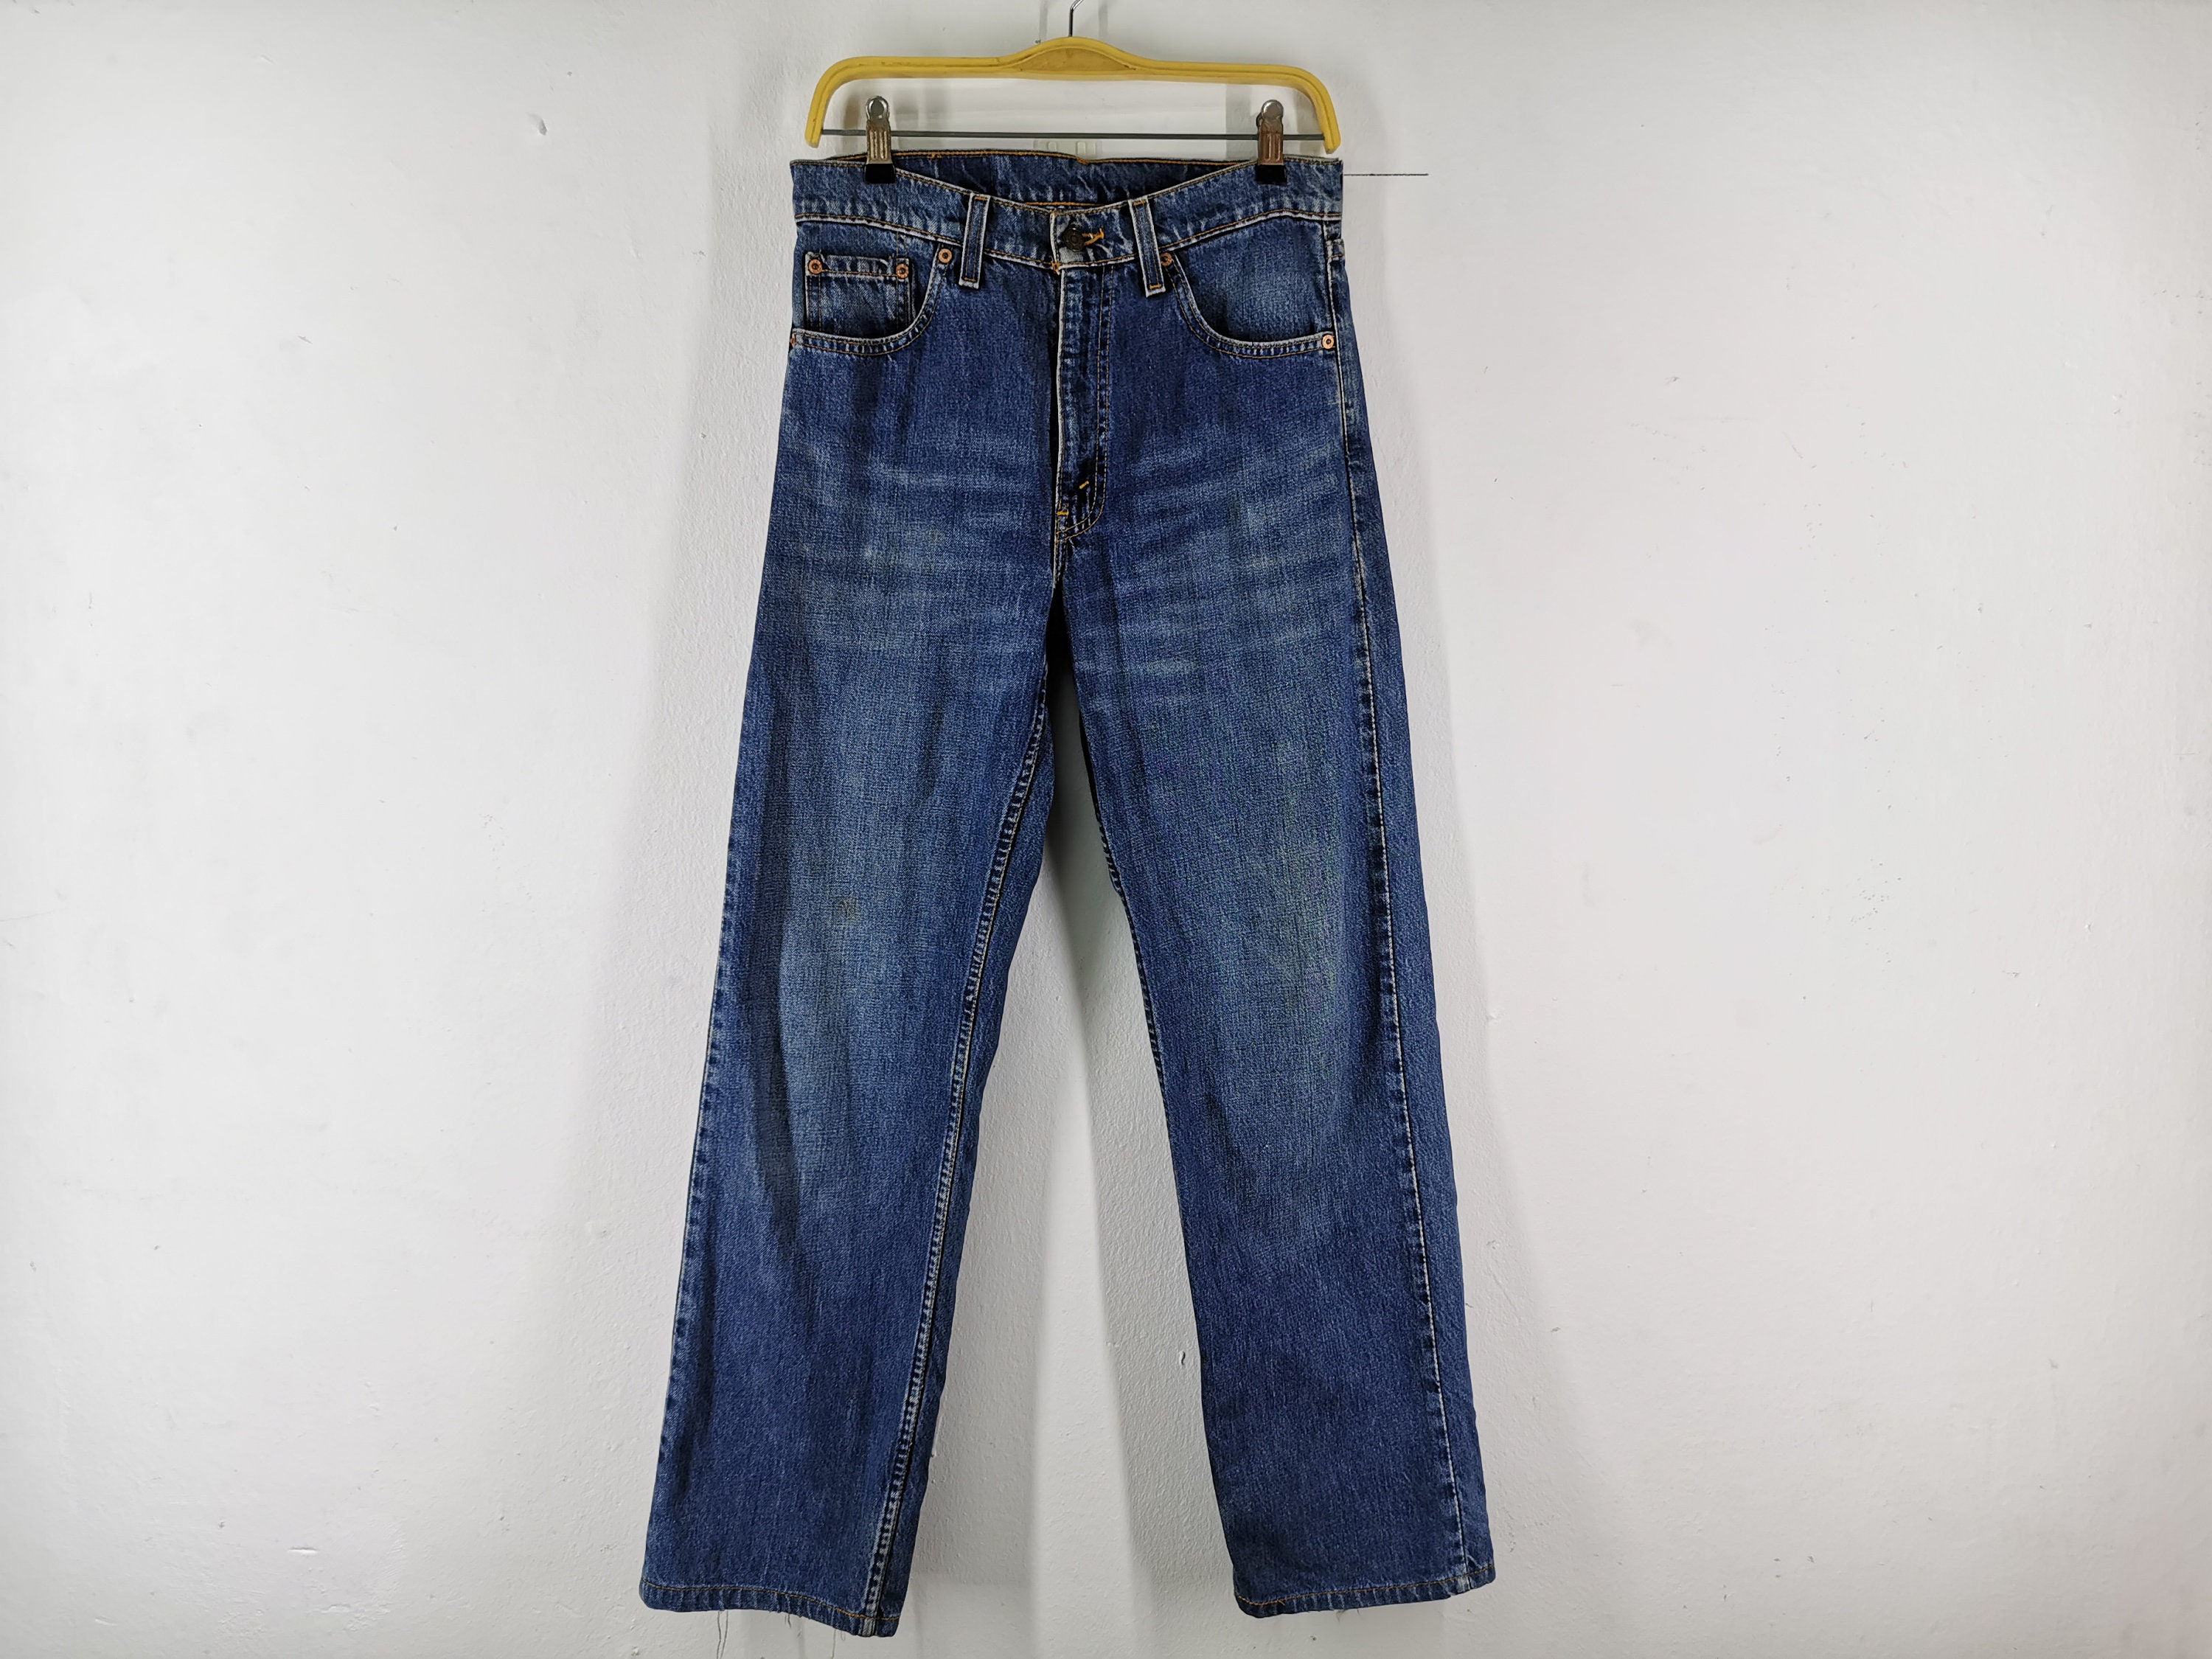 Levis 519 Jeans Distressed Vintage Size 31 Levis 519 Denim | Etsy